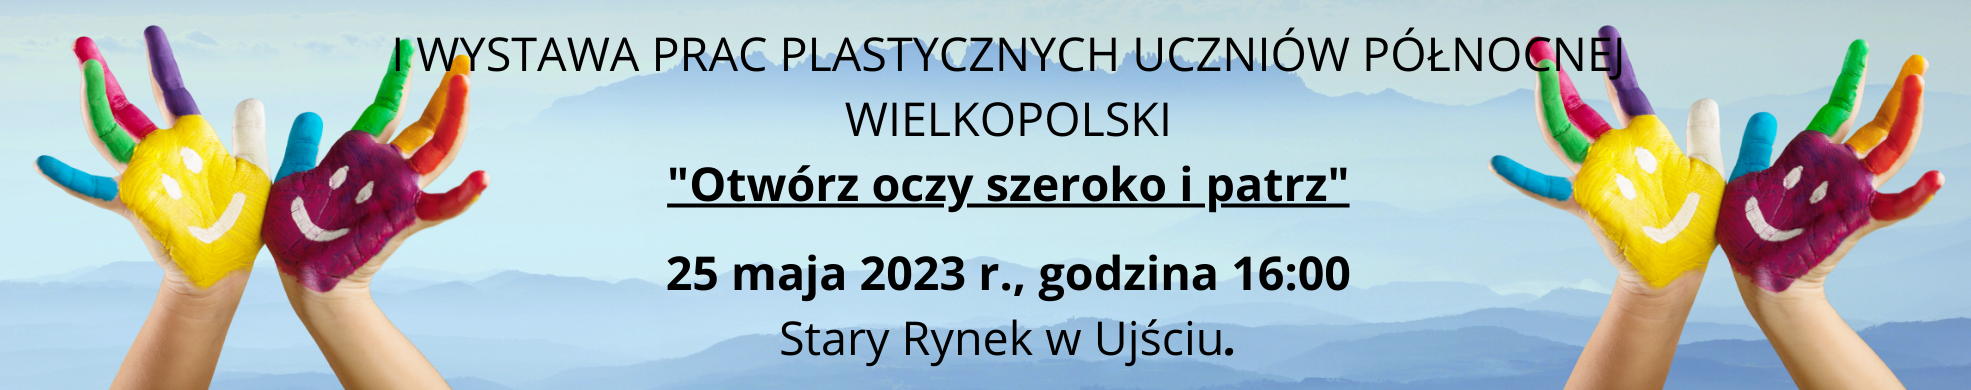 I Wystawie Prac Plastycznych Uczniów Północnej Wielkopolski